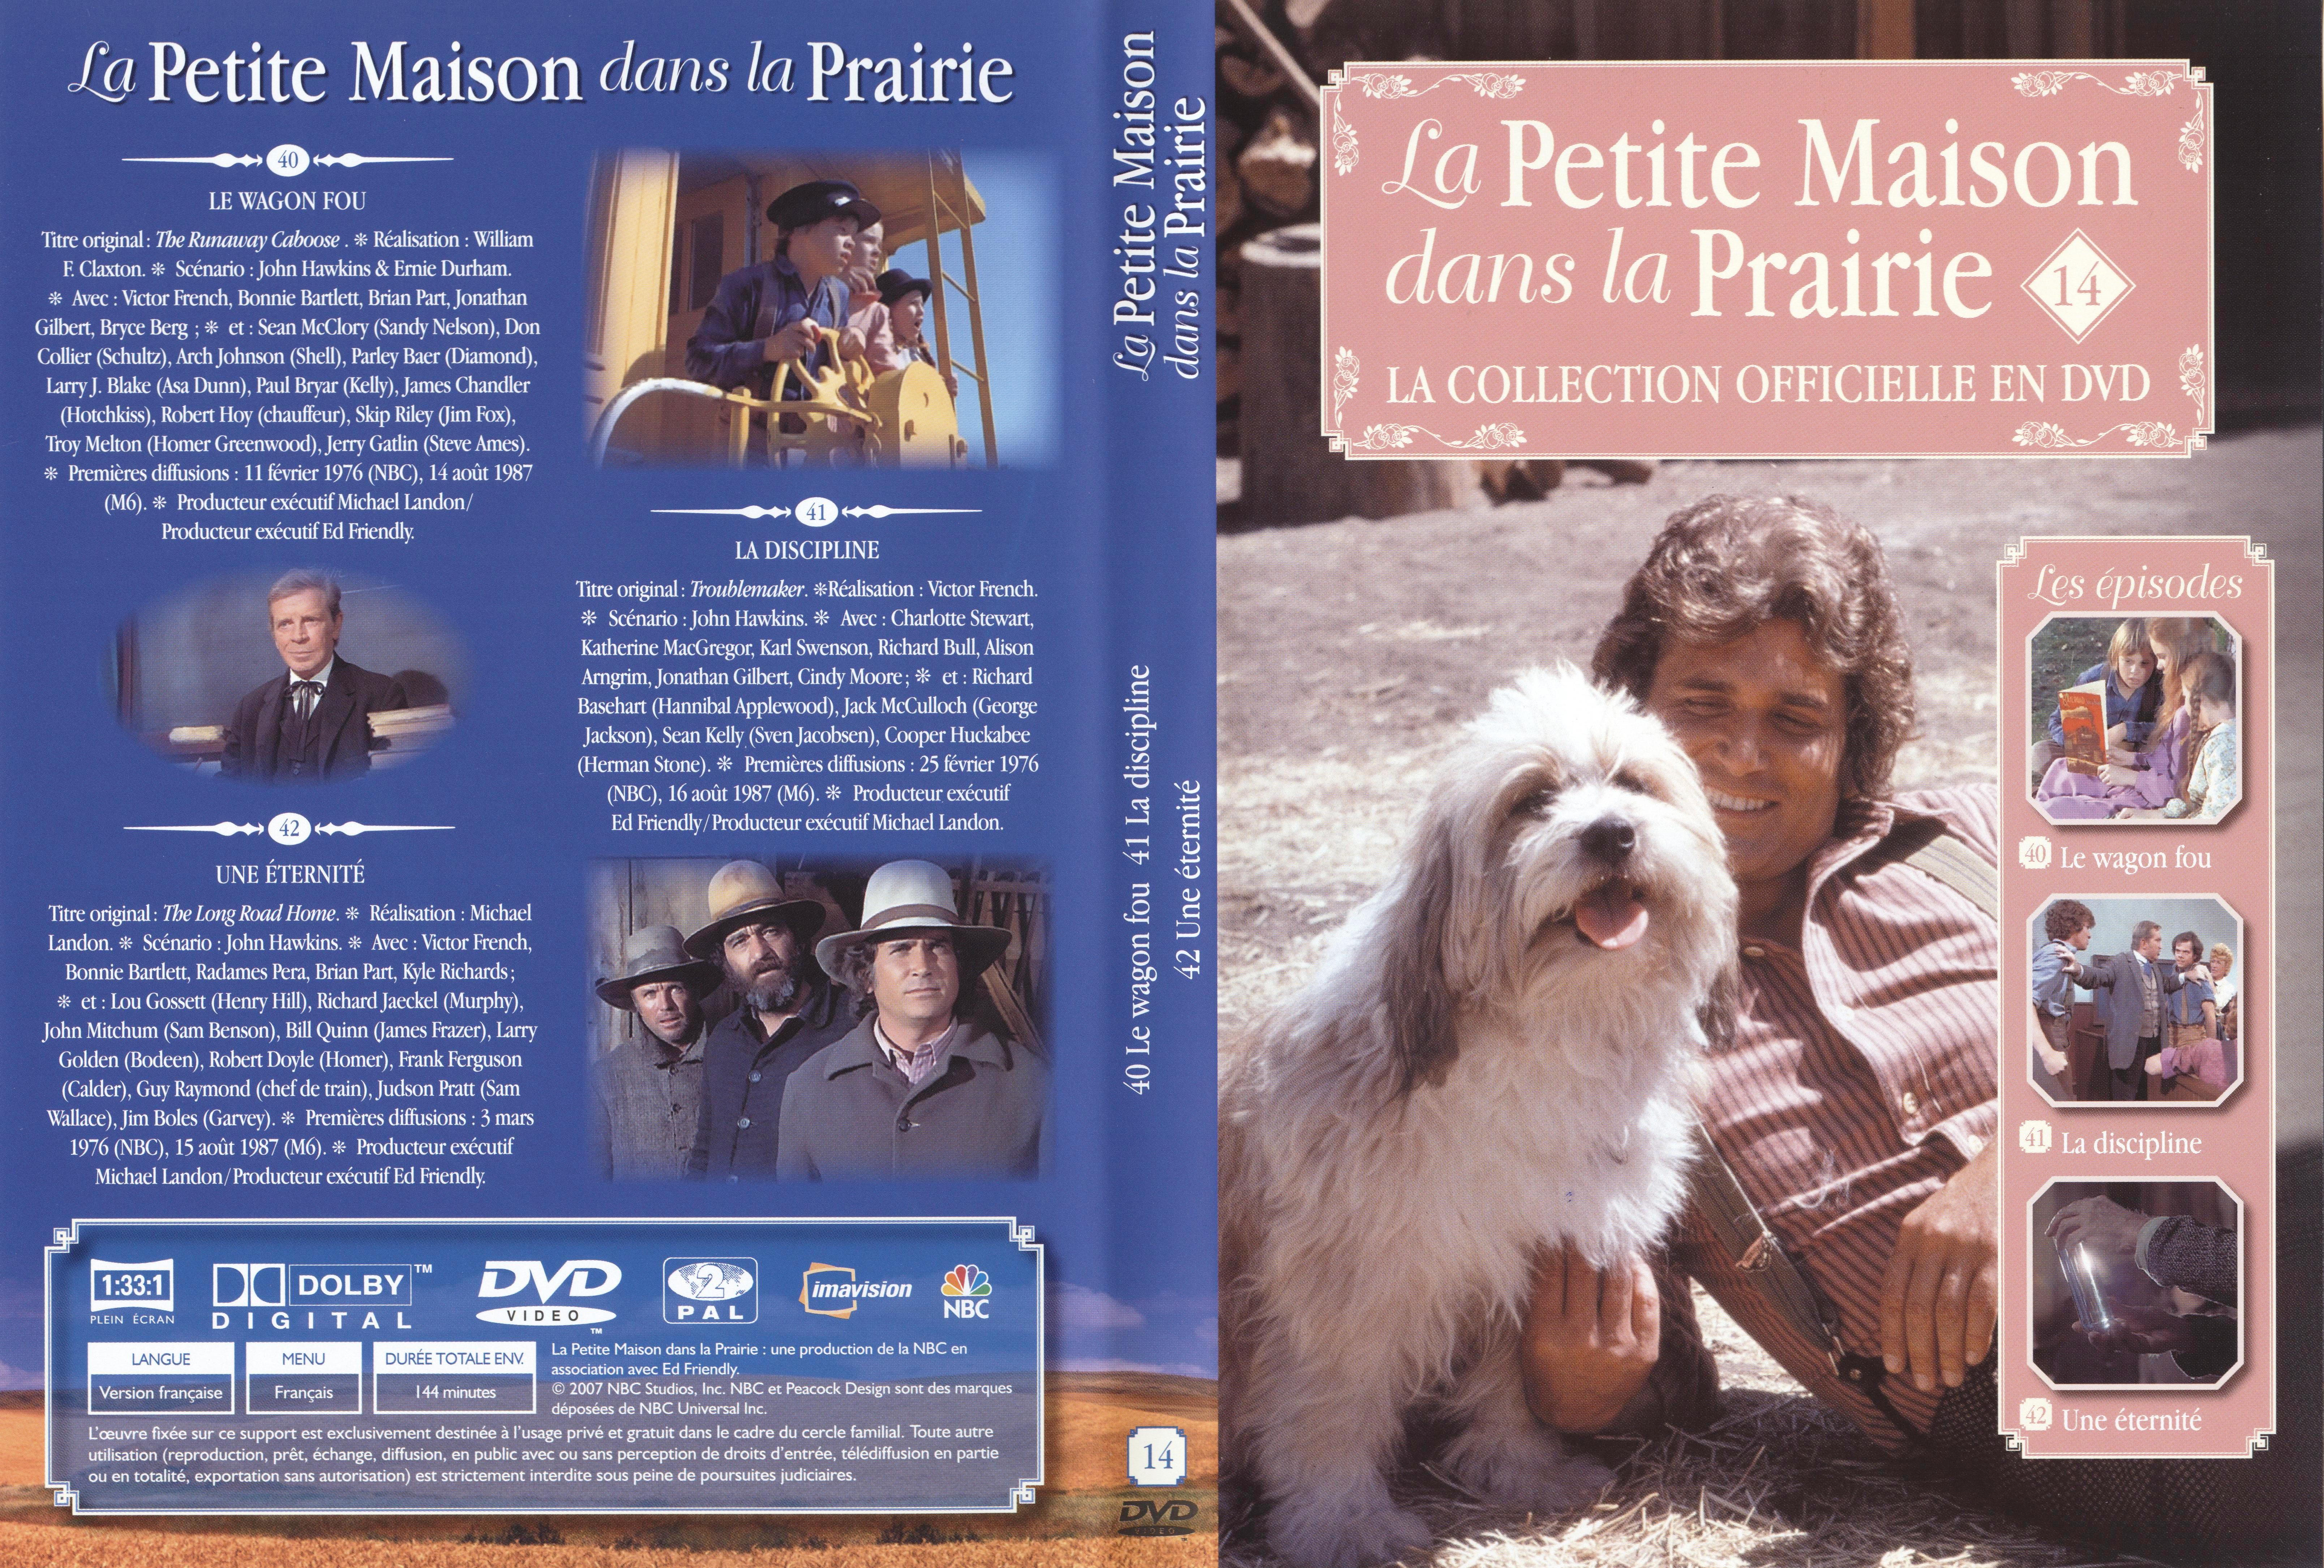 Jaquette DVD La petite maison dans la prairie La Collection vol 14